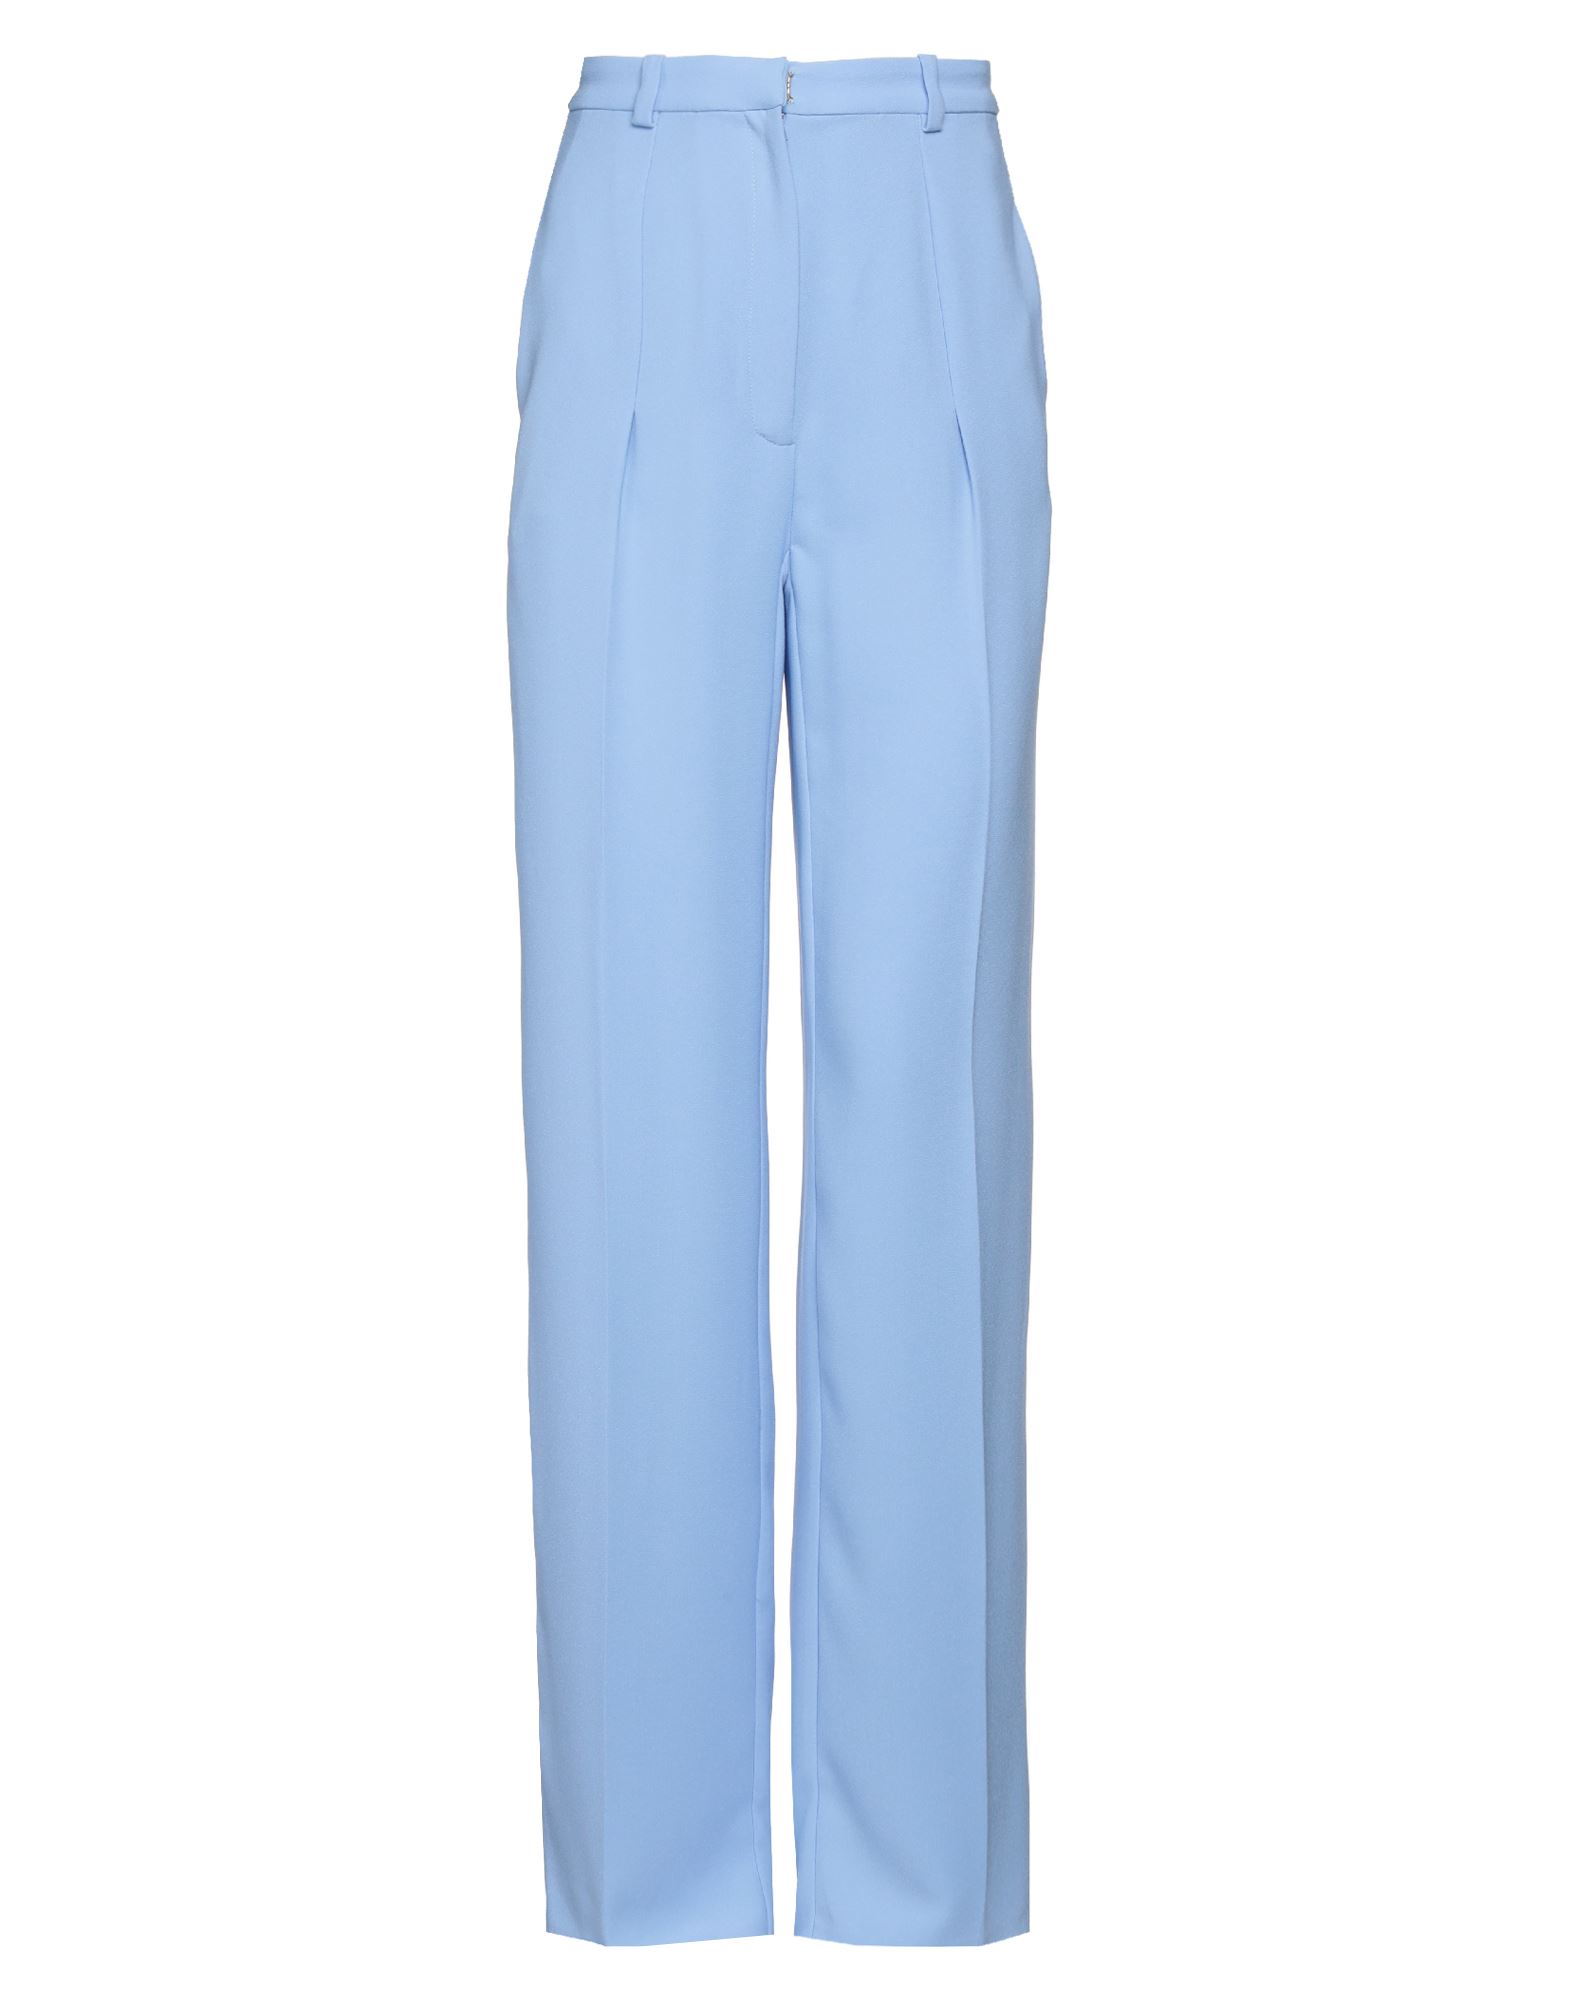 Rhea Costa Pants In Blue